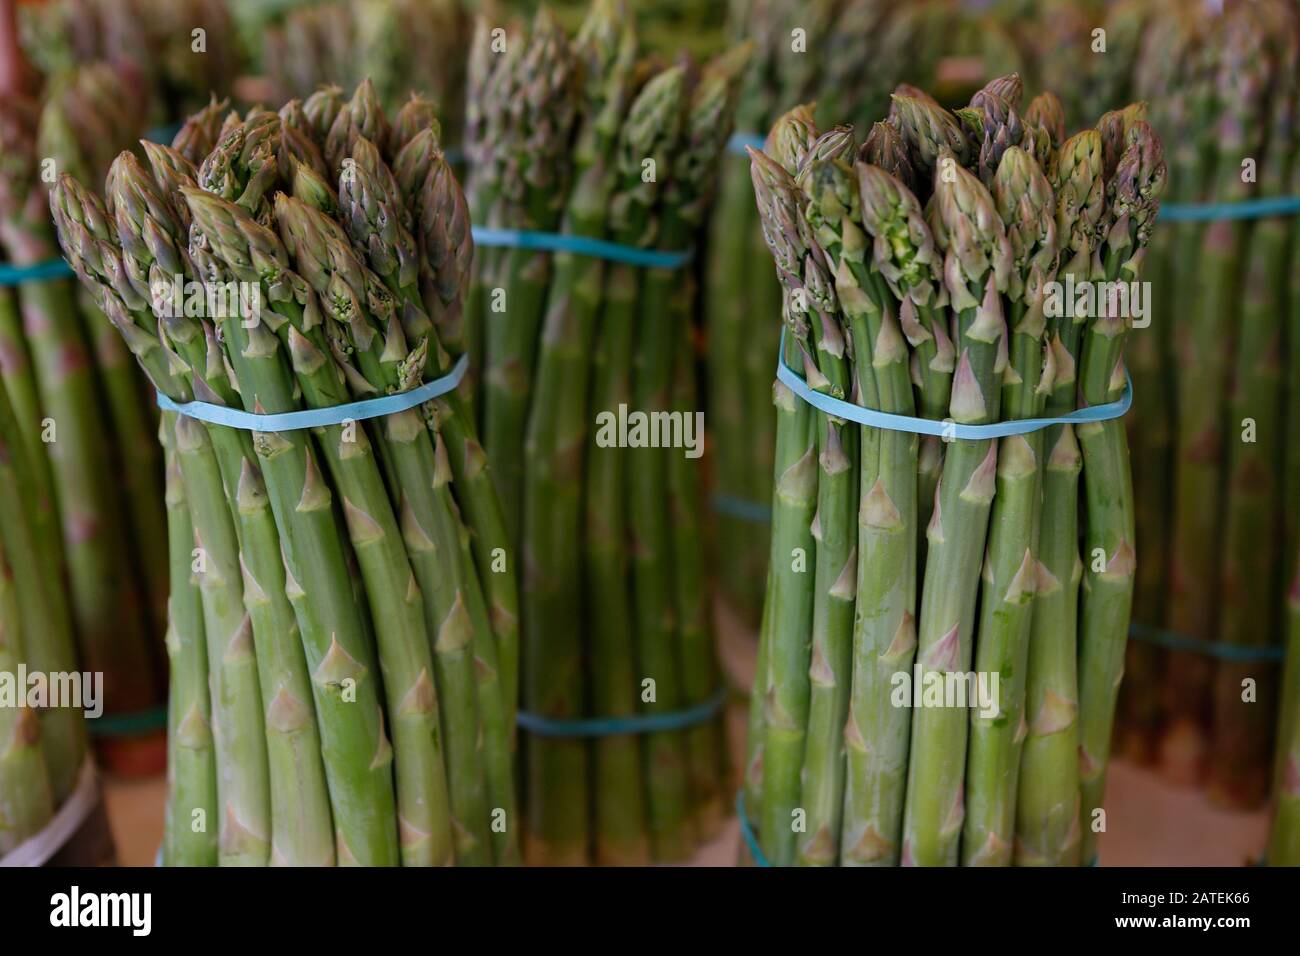 Asparagus (Asparagus officinalis), bundle, harvested asparagus, Italy Stock Photo